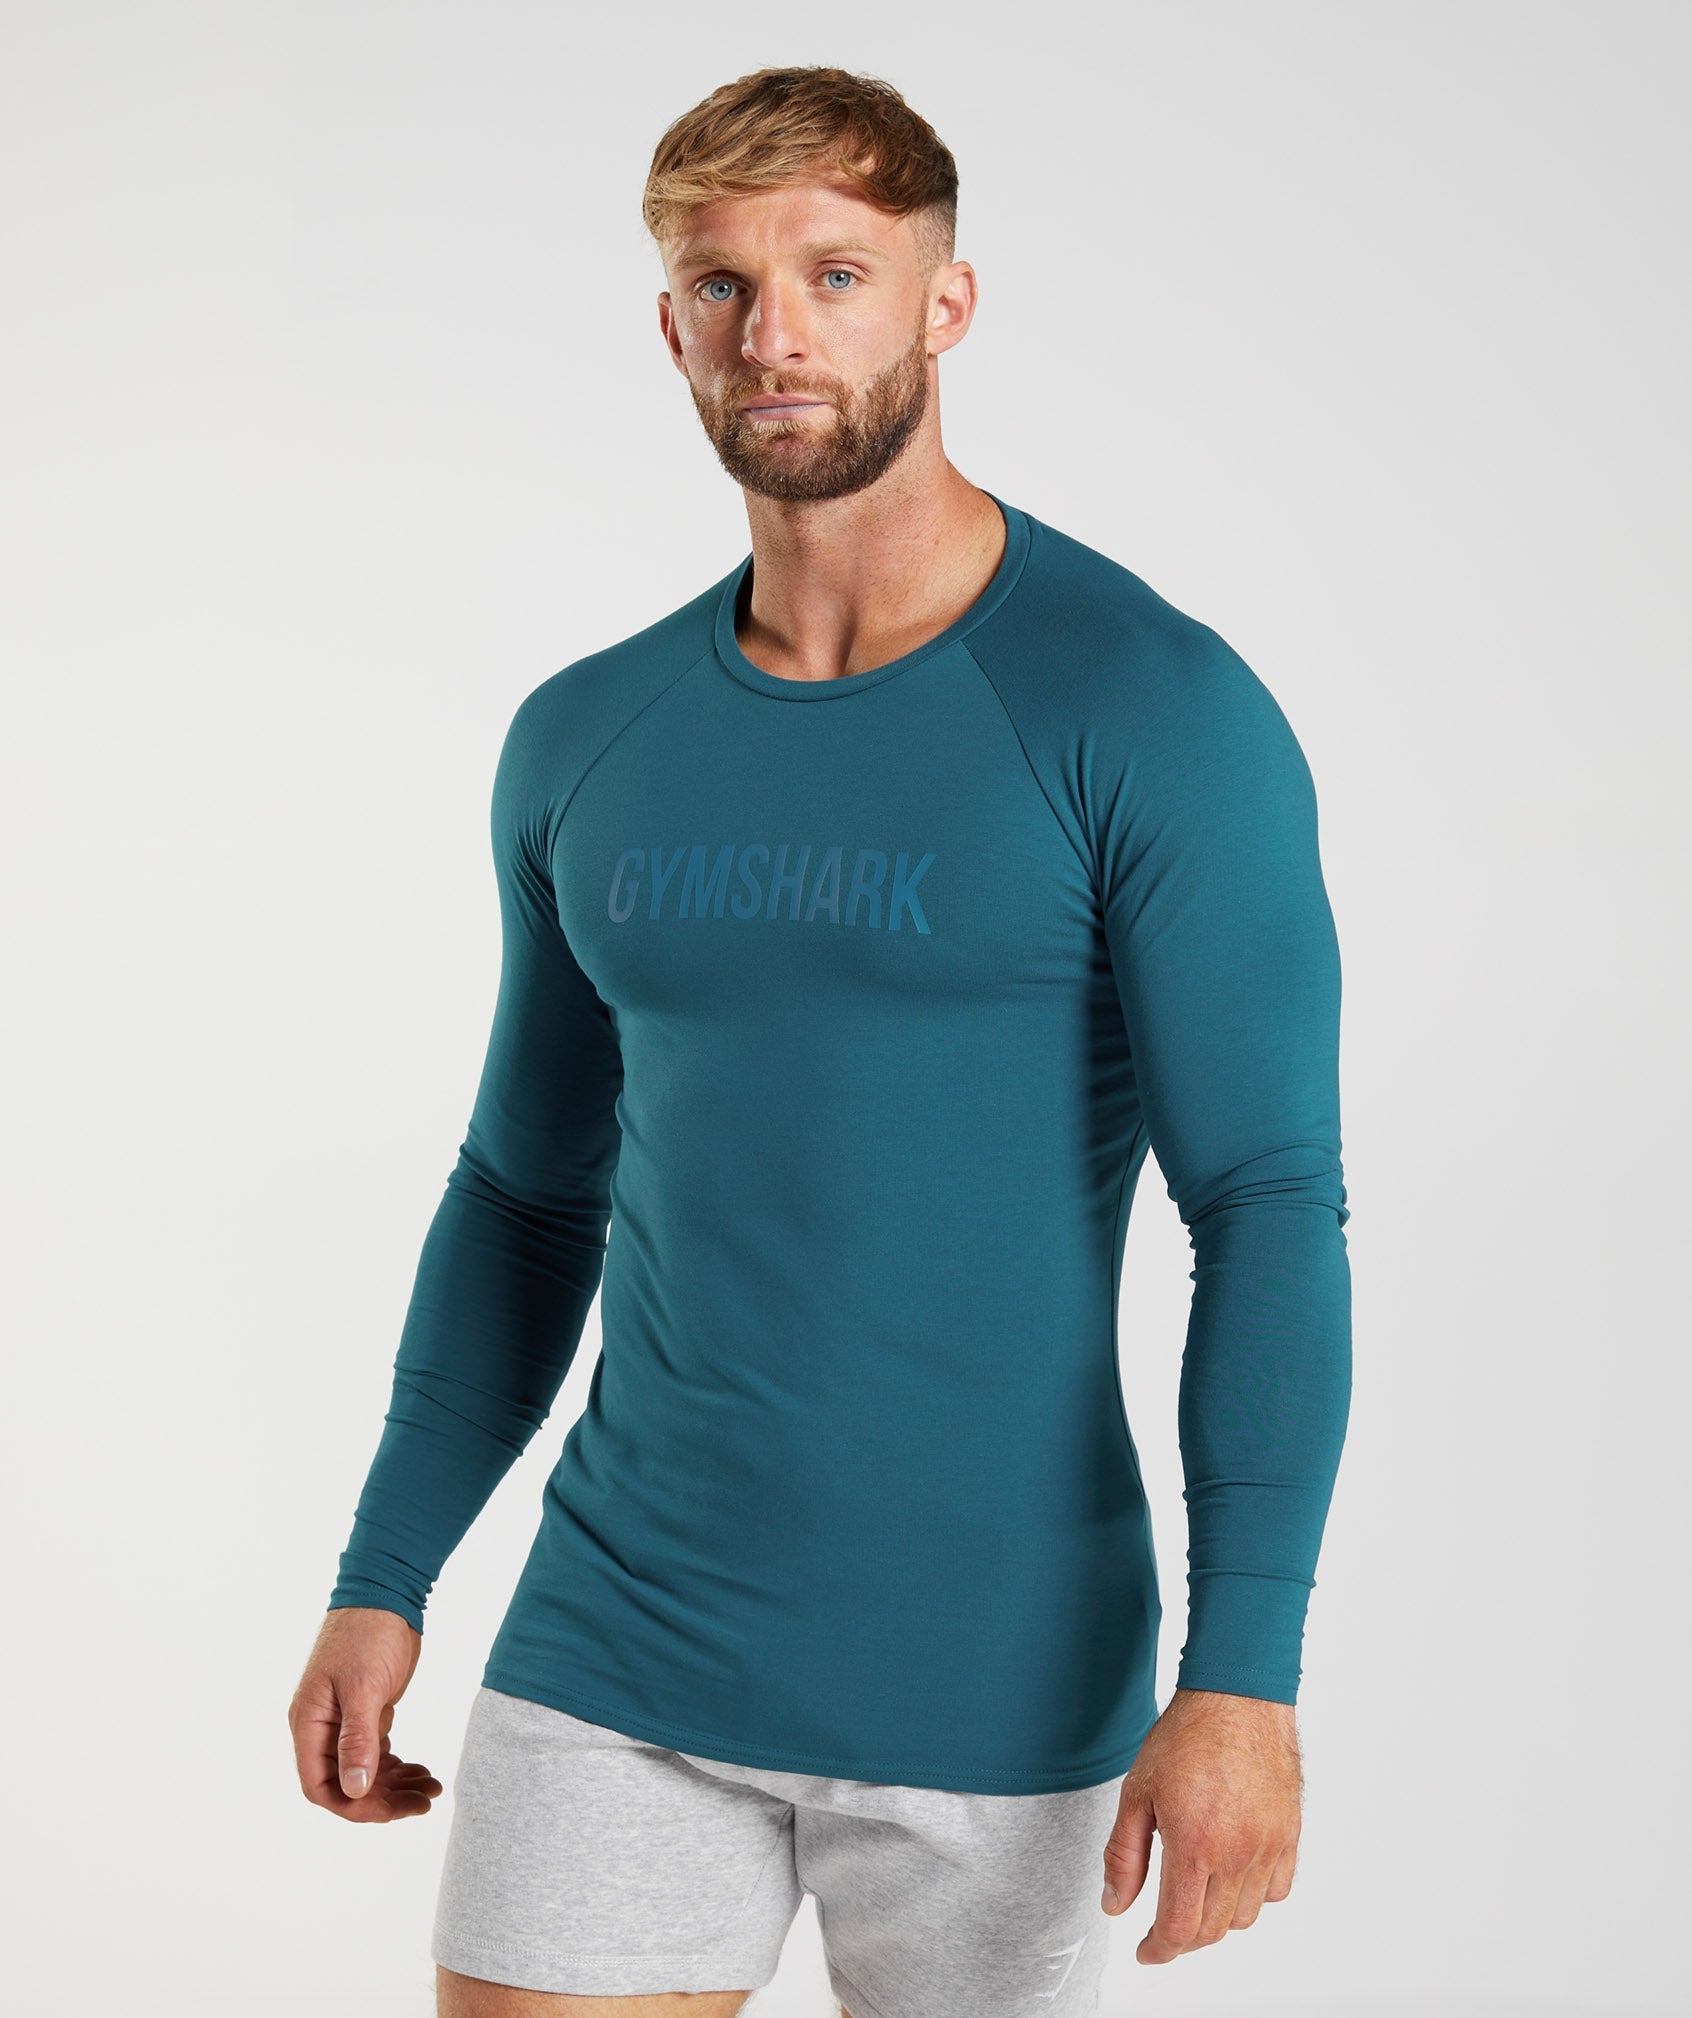 Gymshark Shirt Men Extra Large Navy Blue Logo Athletic Stretch Basic Tee  T-Shirt